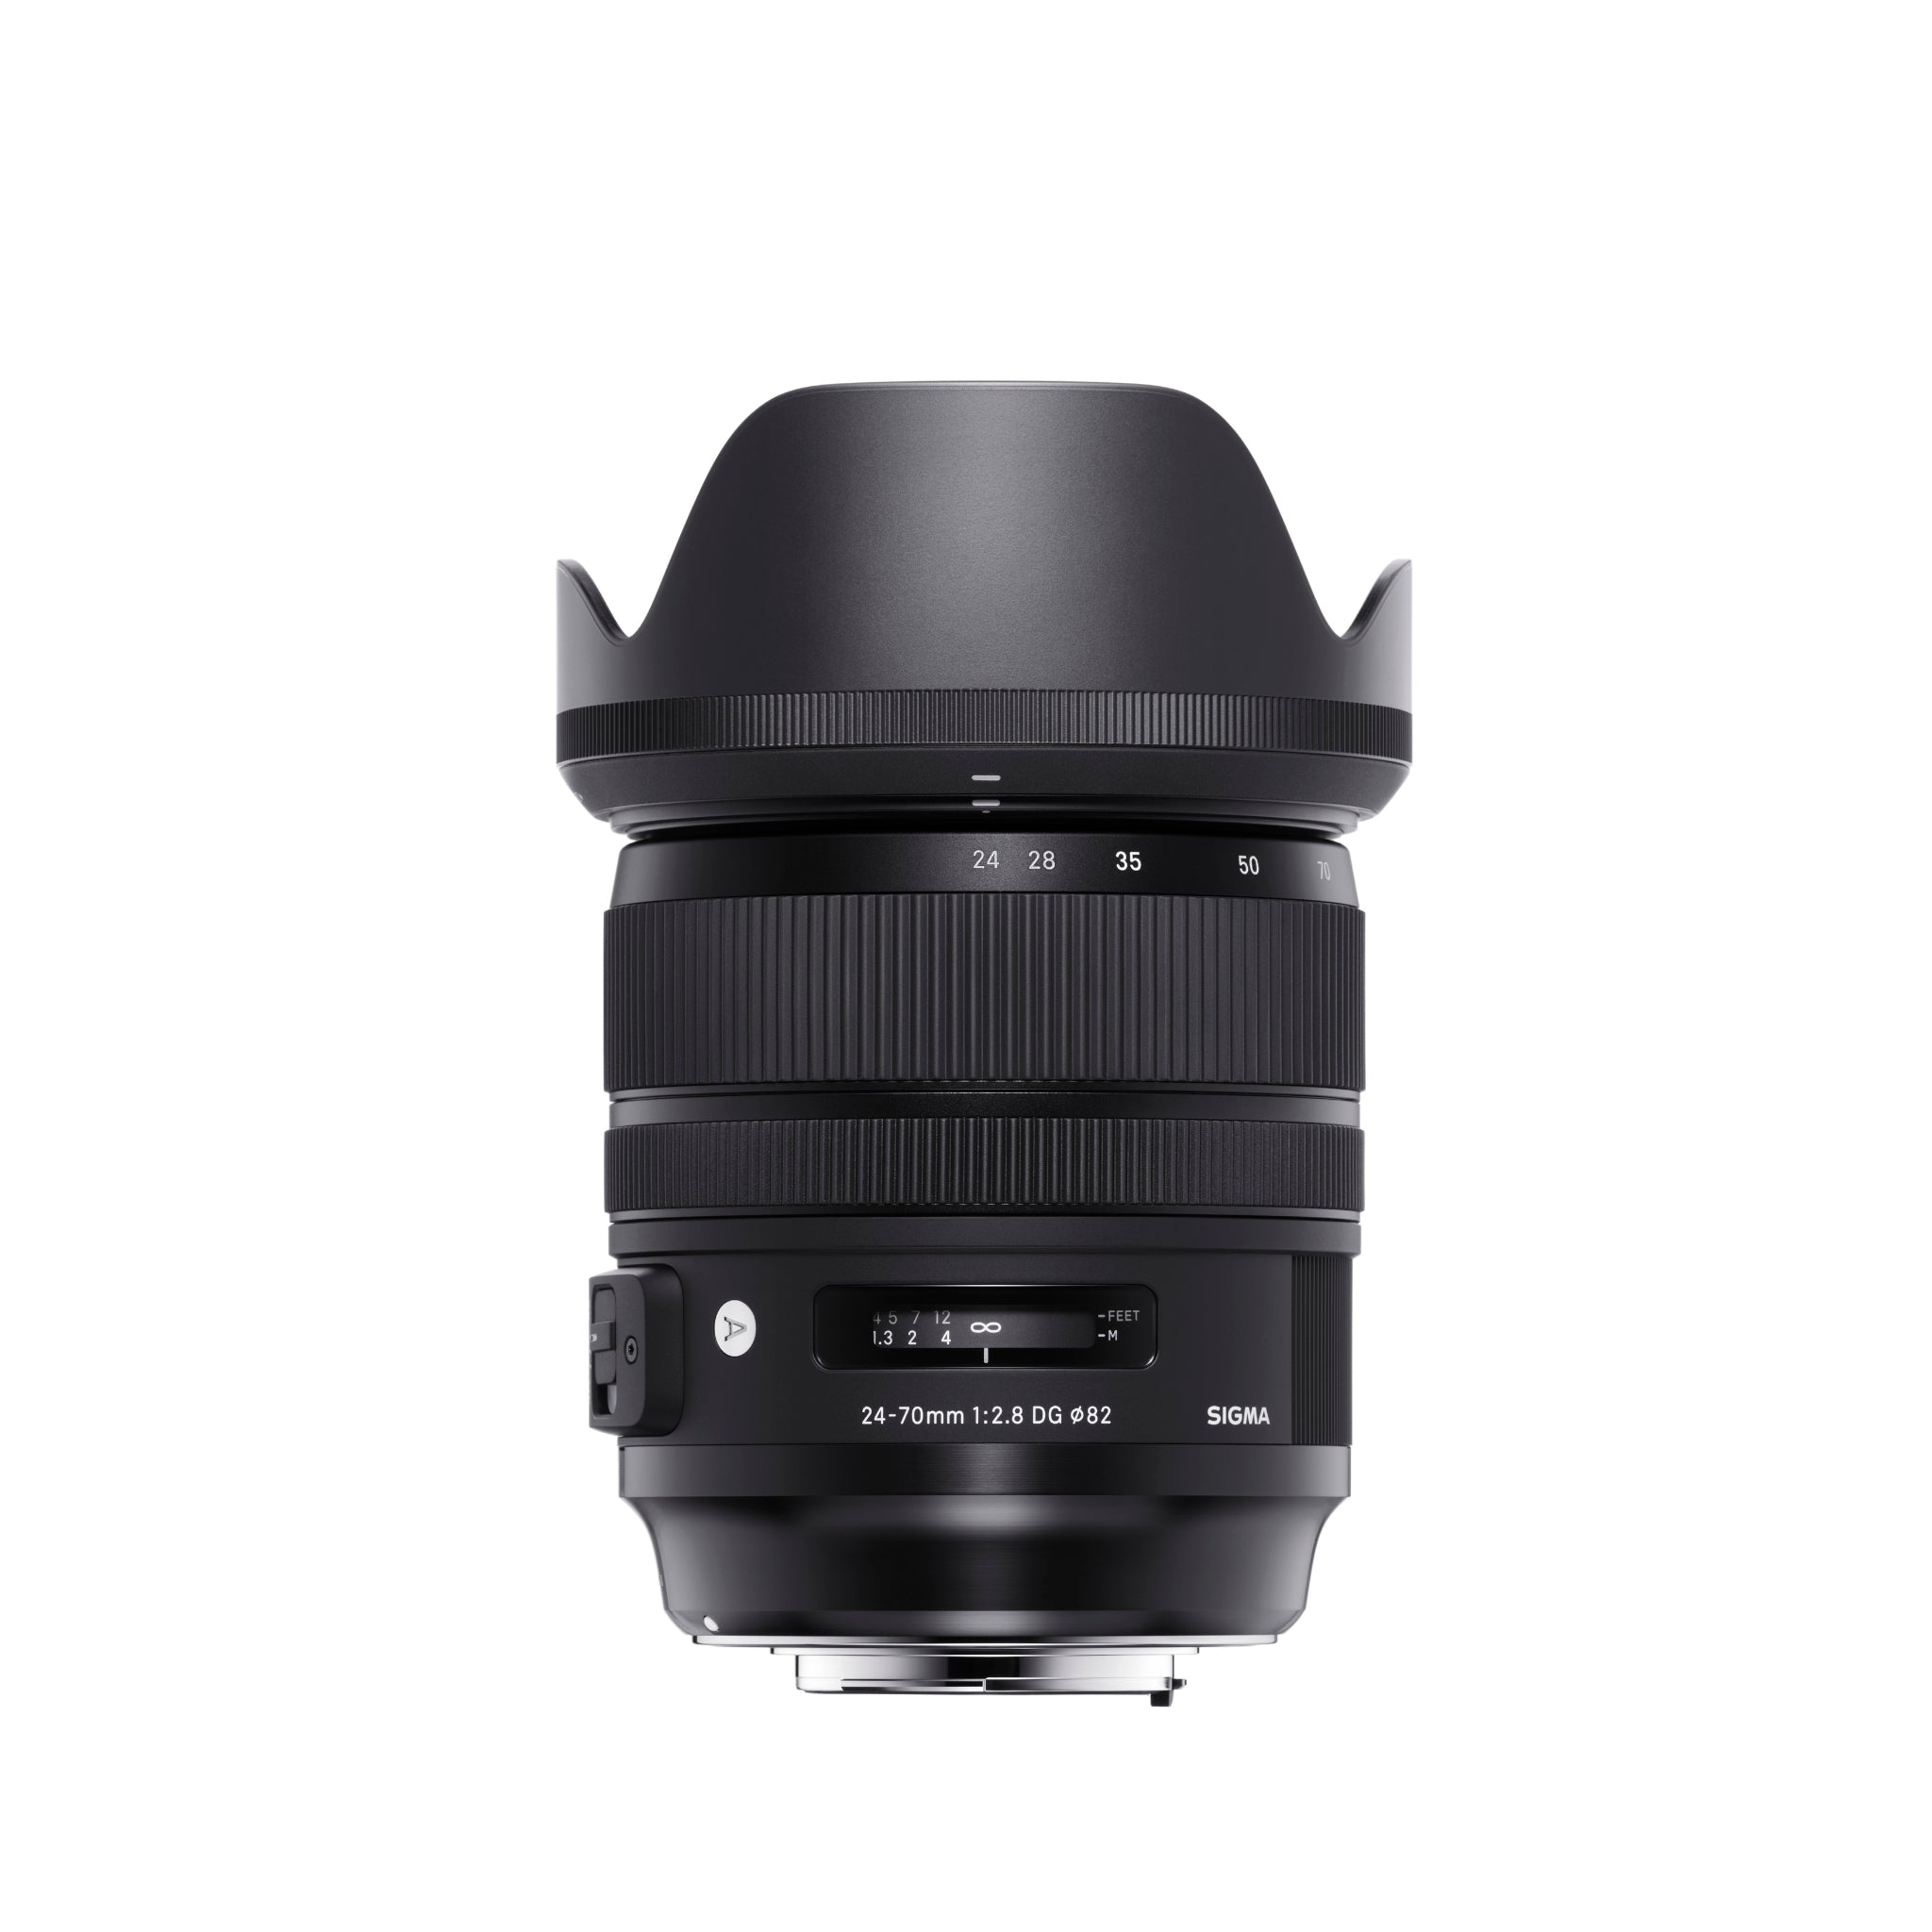 Sigma 24-70mm f2.8 DG OS HSM  (Canon Mount) Full Frame lens